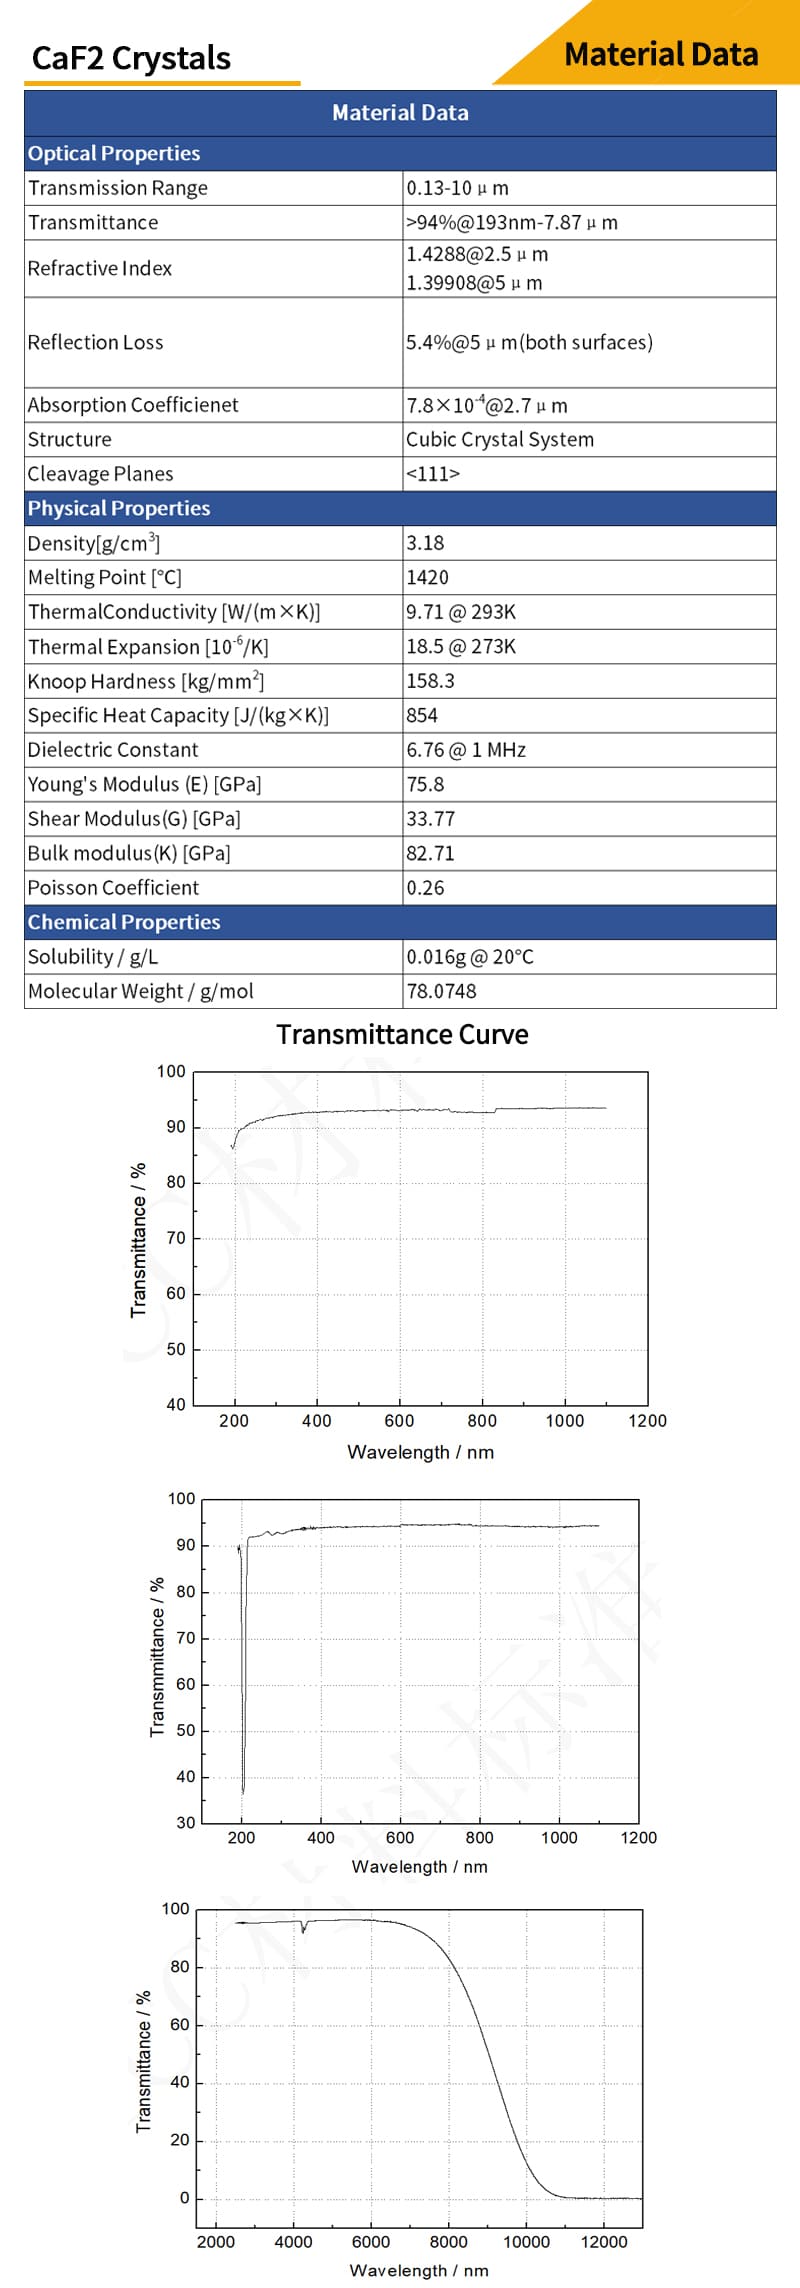 Calcium Fluoride bi-convex lenses material data and transmittance curves